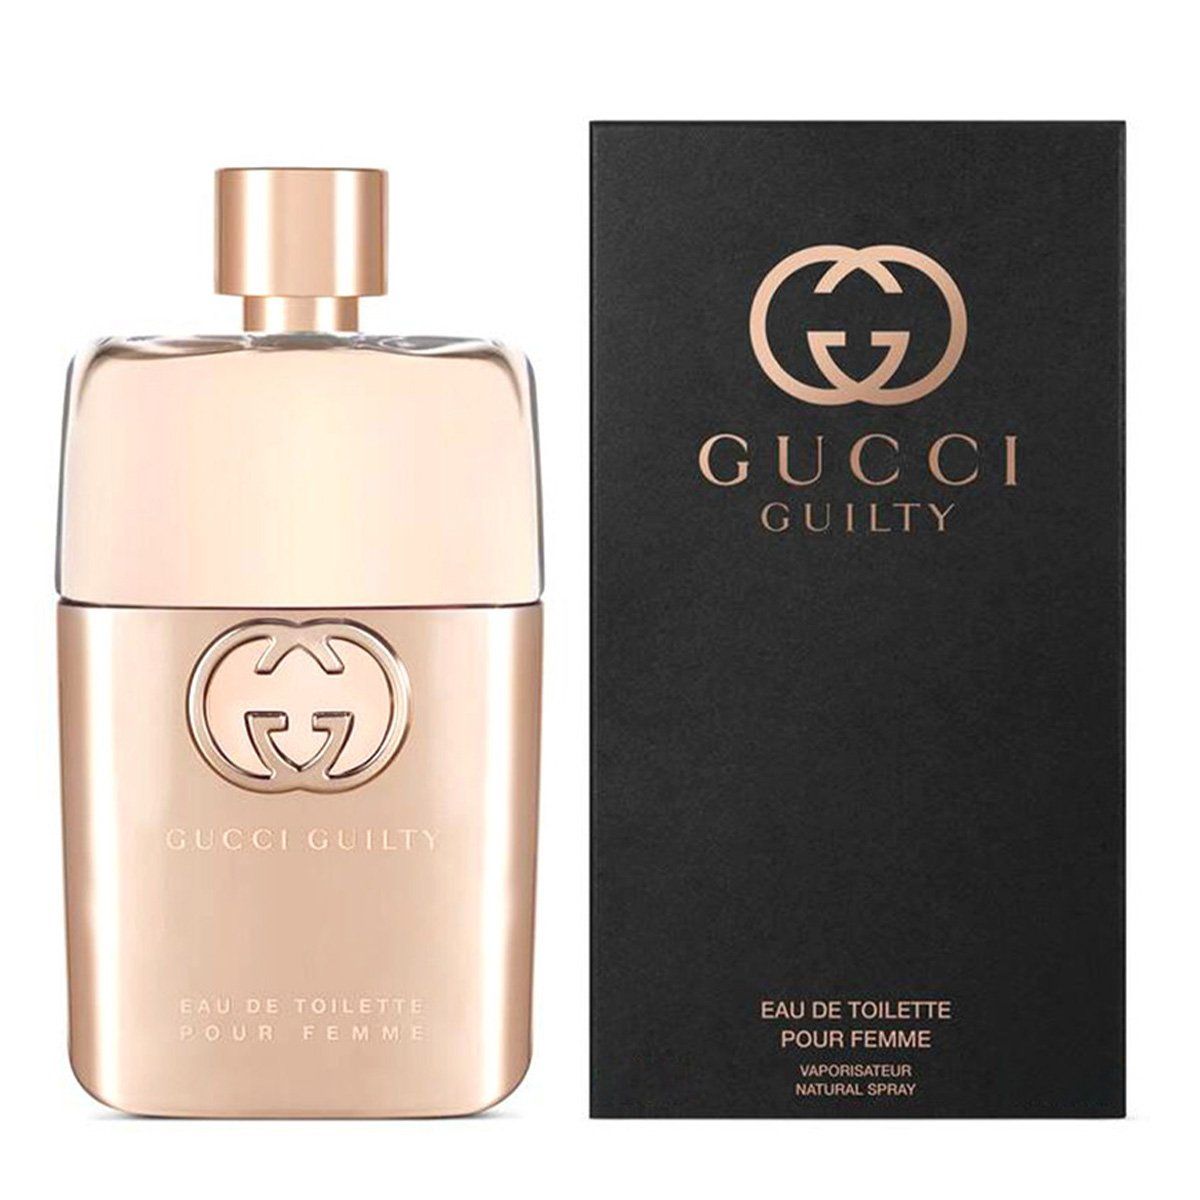 Nước hoa Gucci Guilty Pour Femme Eau de Toilette (Eau de Toilette/90ml)  chính hãng Gucci cao cấp dà - FIT - Đặc quyền ưu đãi